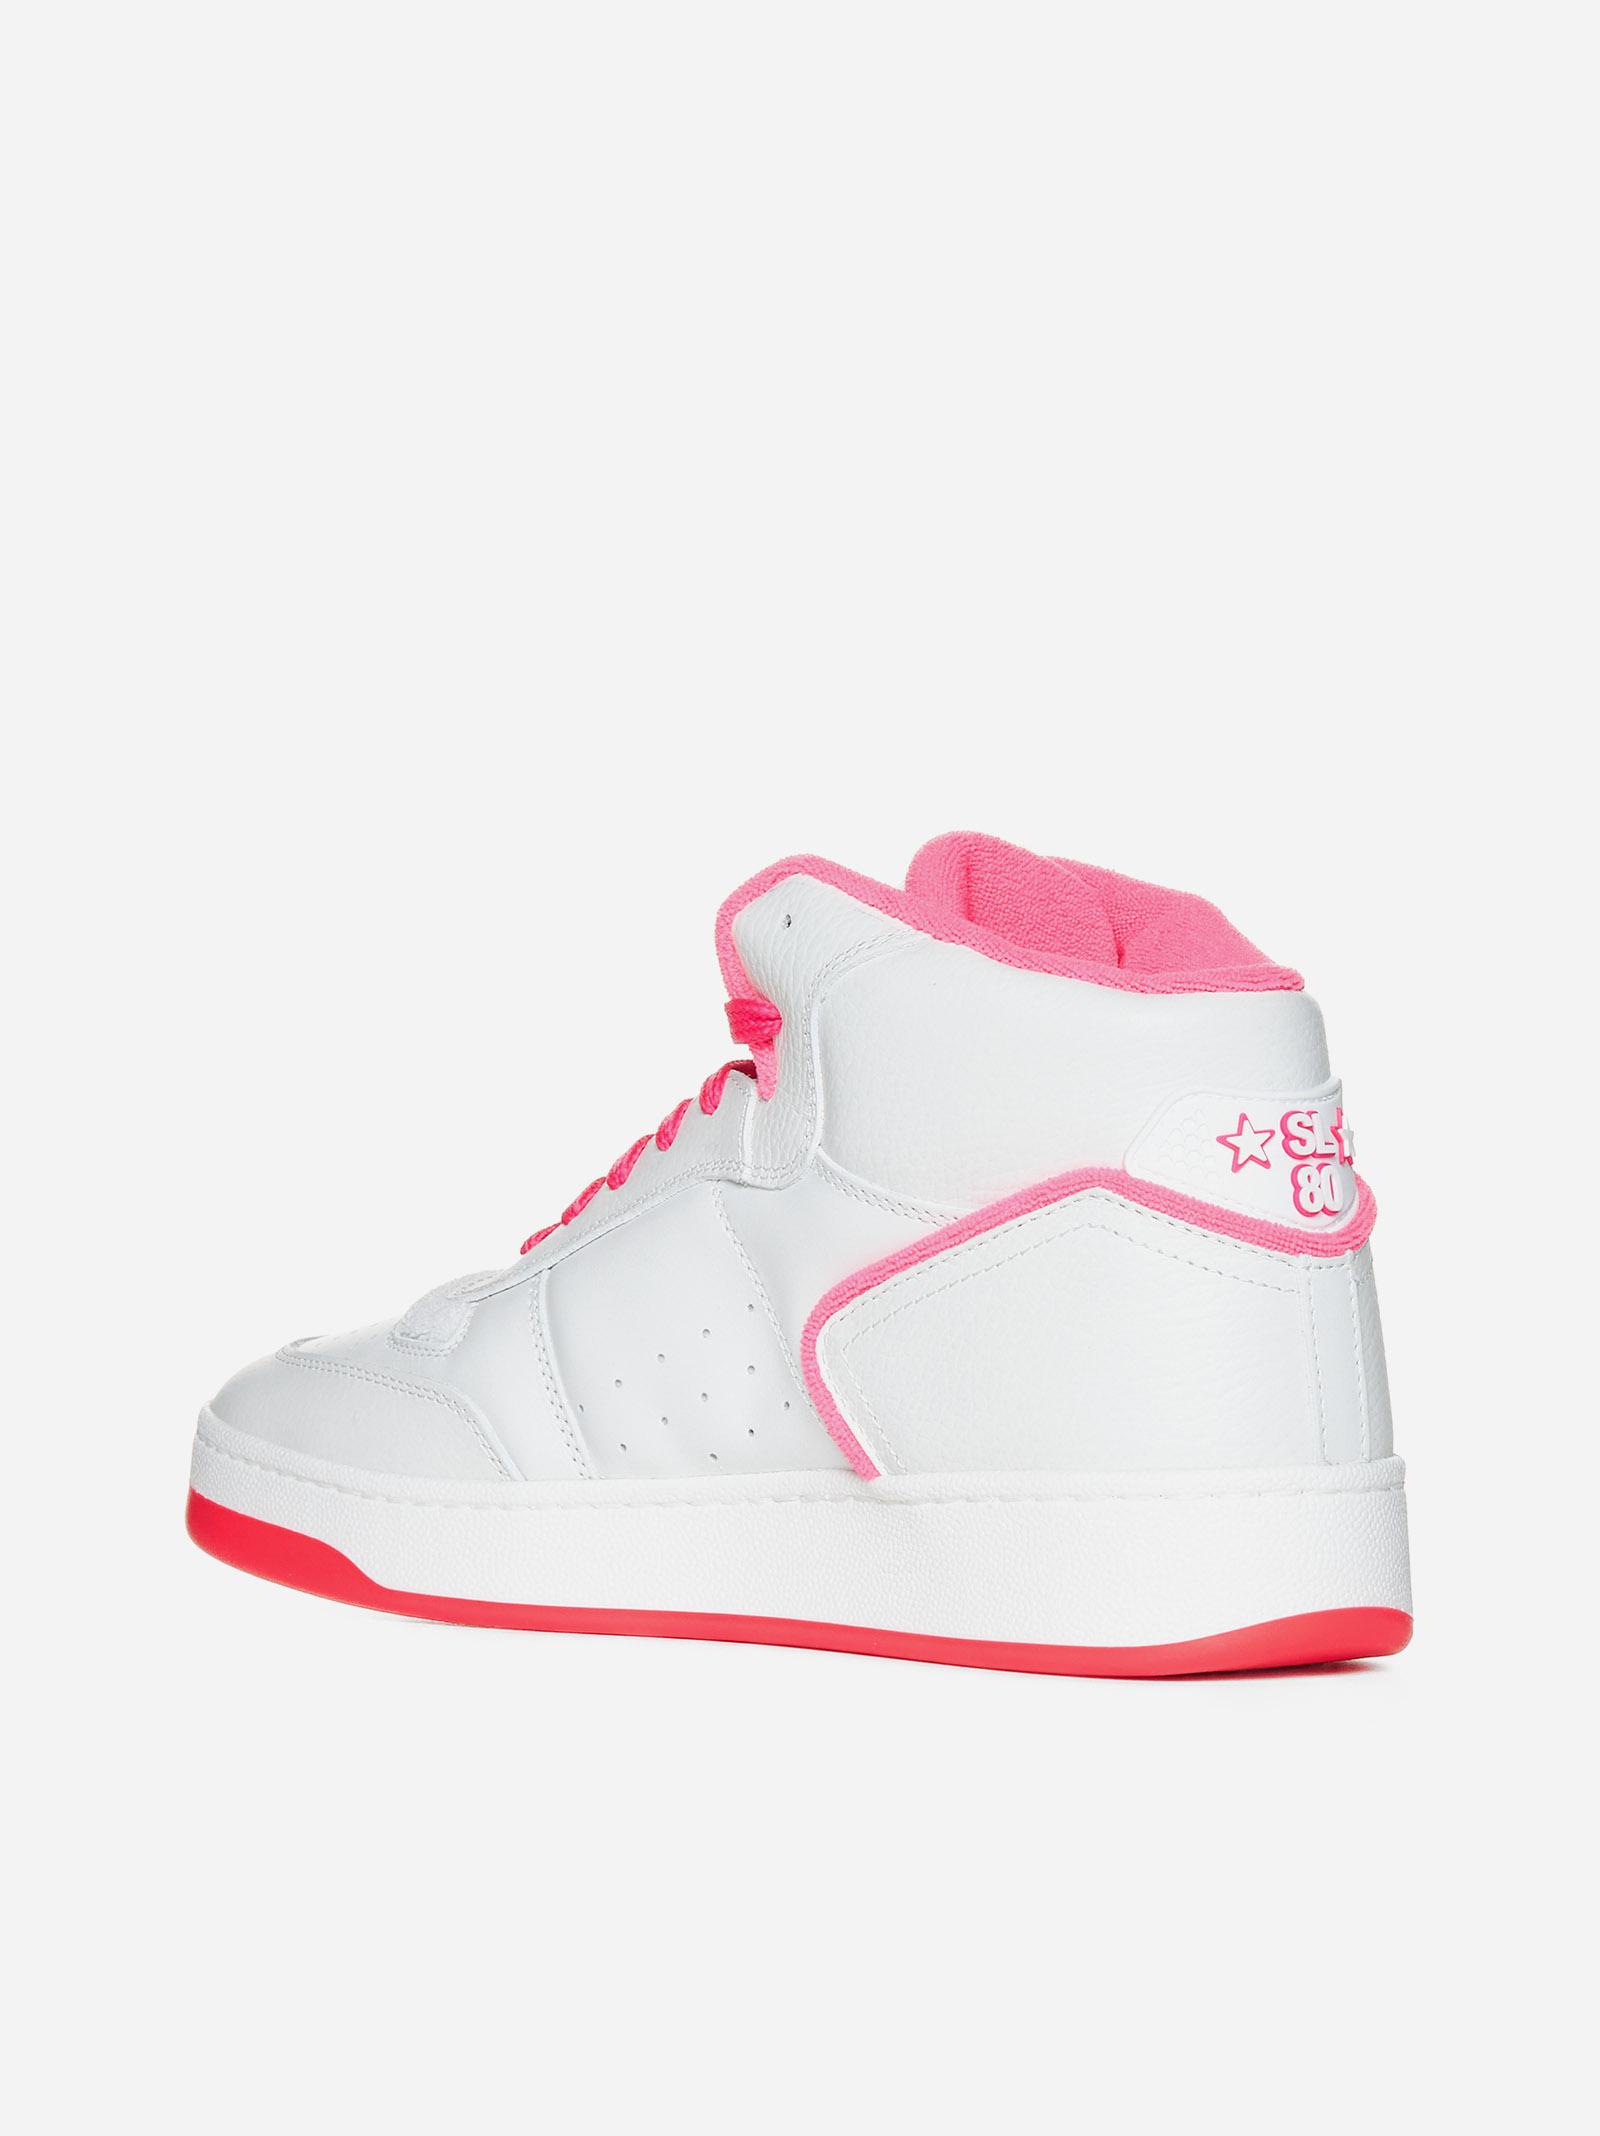 Saint Laurent Sneakers in Pink for Men